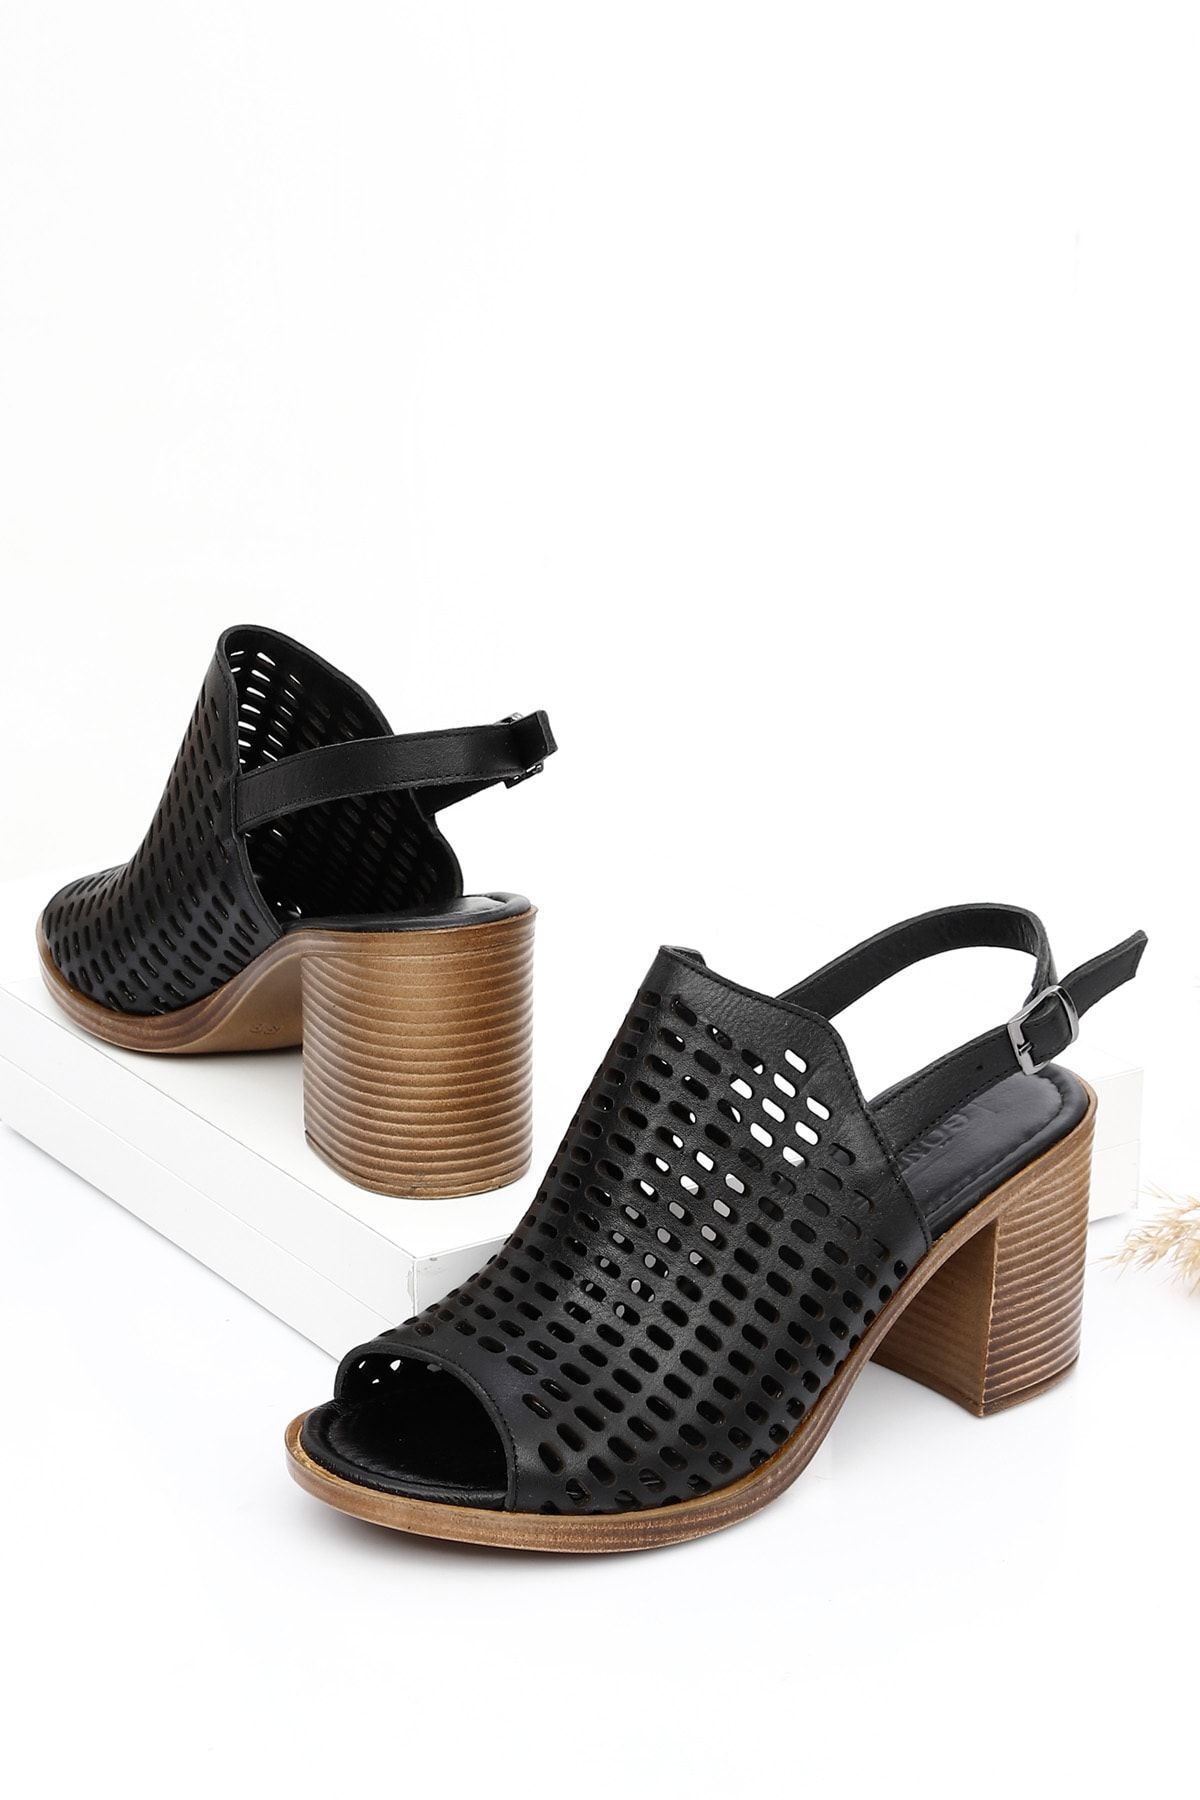 GÖNDERİ(R) Siyah Gön Hakiki Deri Topuklu Kadın Sandalet 45844